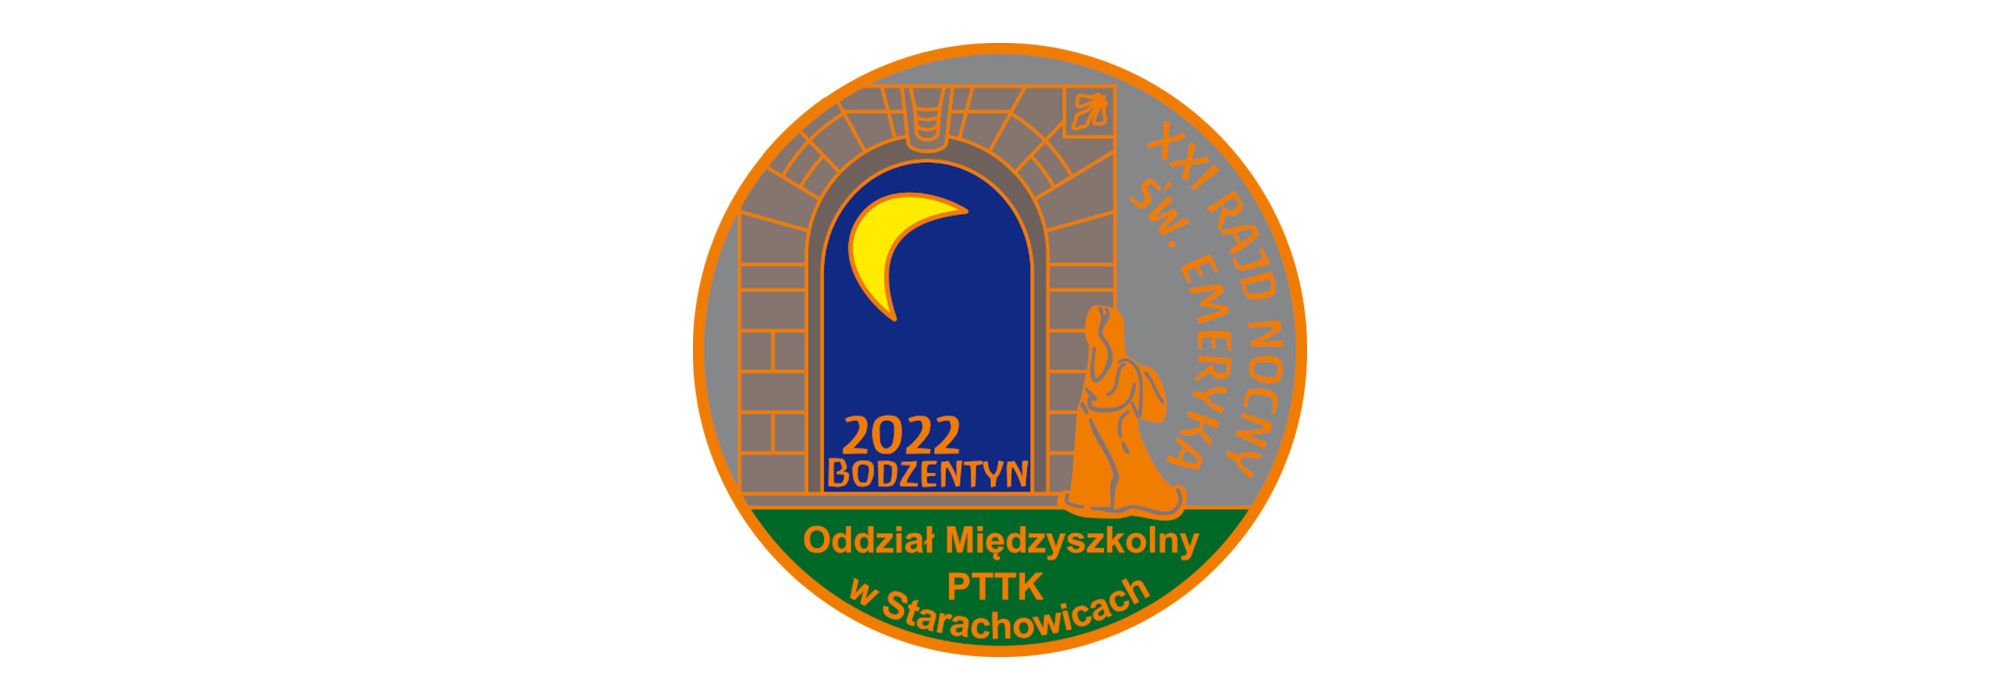 XXI Ogólnopolski Rajd Nocny Świętego Emeryka - Bodzentyn 2022